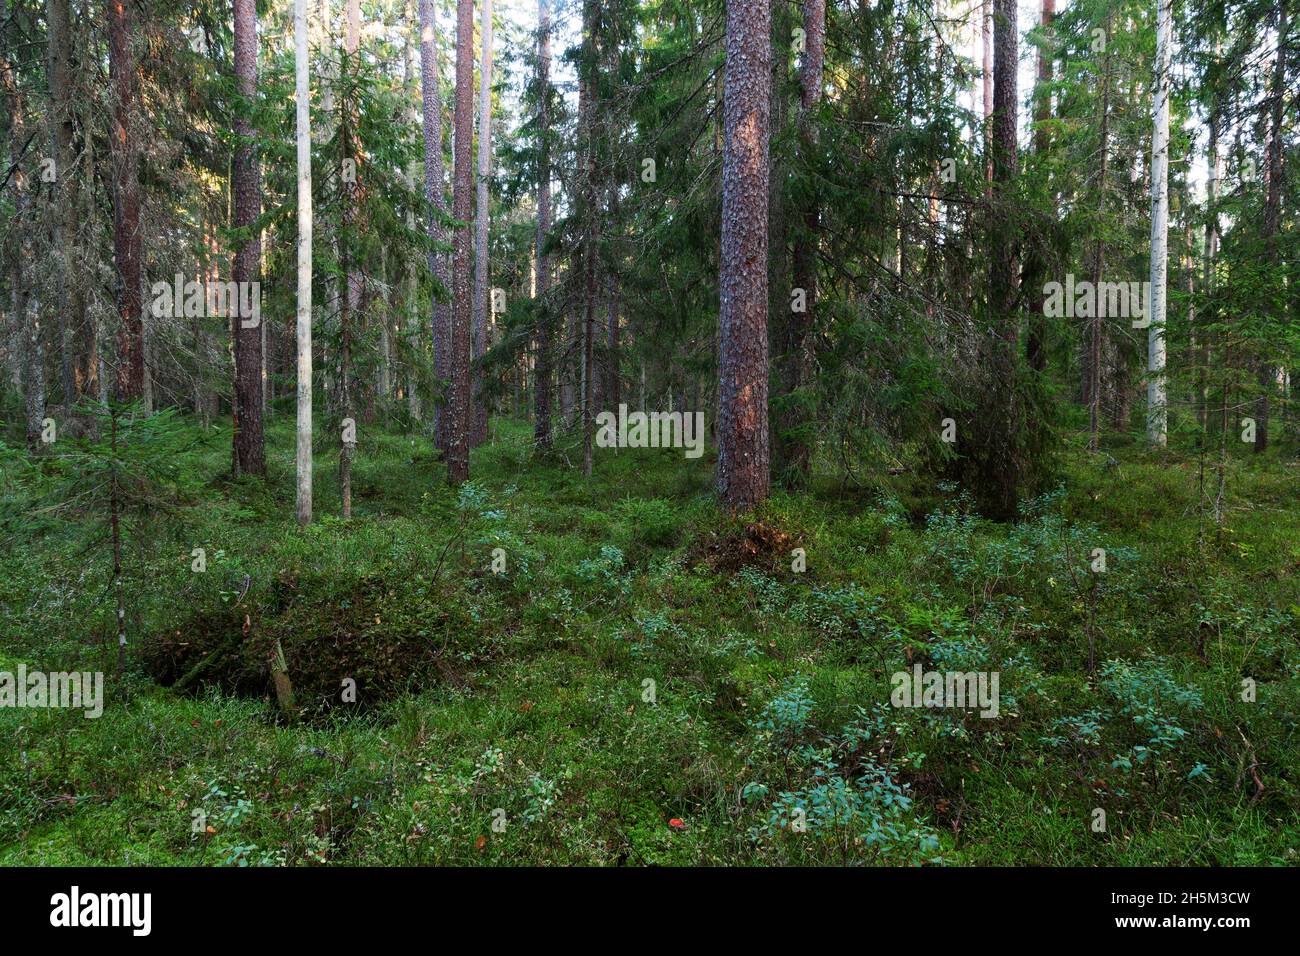 Un bosque antiguo estonio con árboles en descomposición y viejos durante una noche de verano. Foto de stock